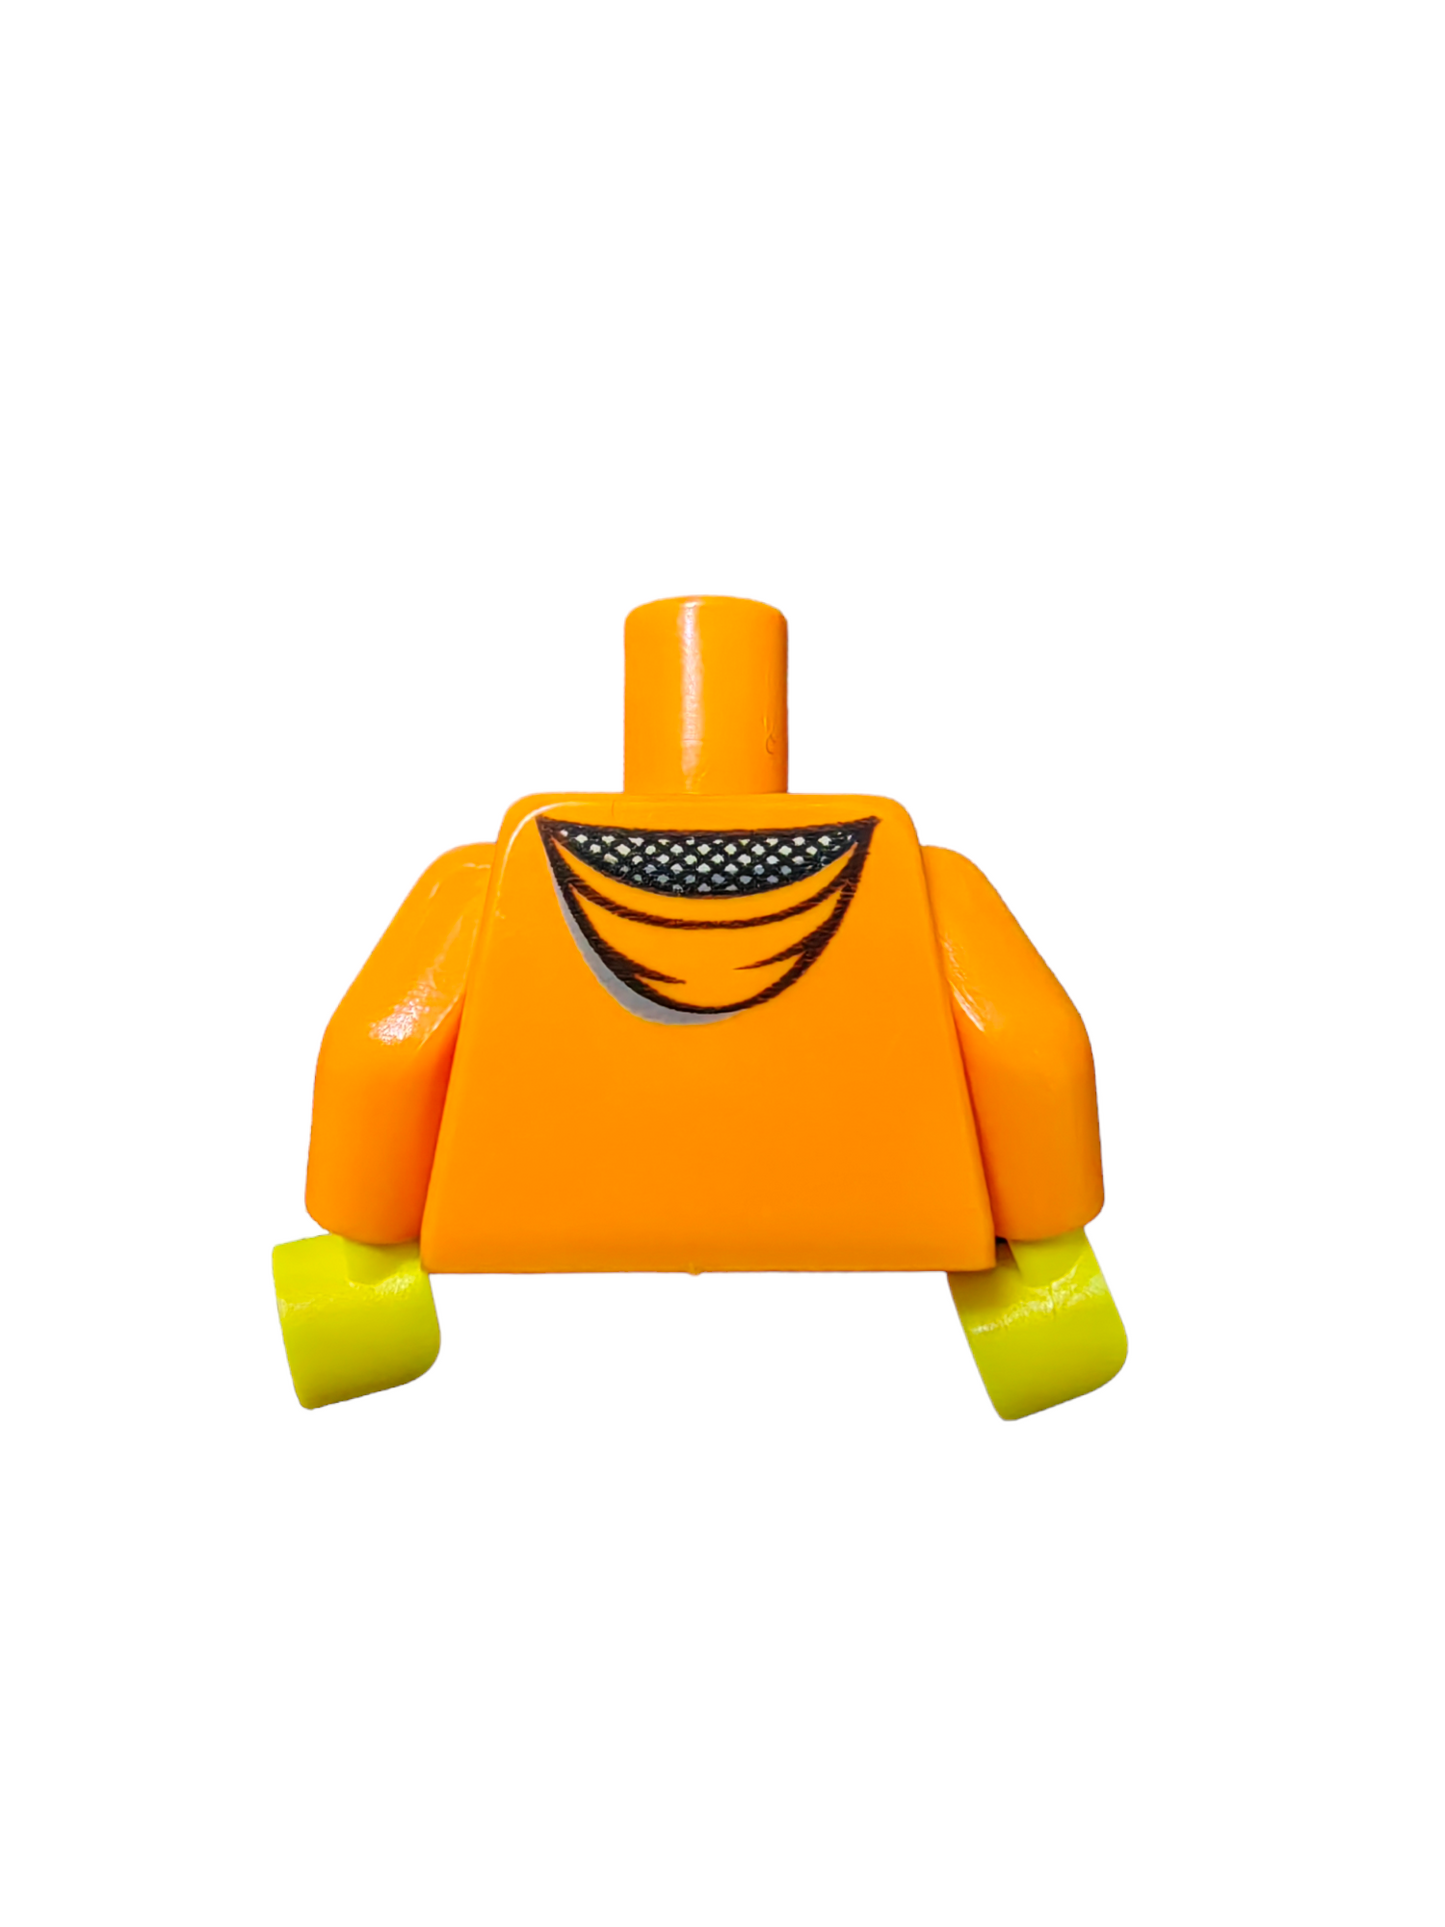 LEGO Torso, Orange Jacket with Hood and a Light Blue Top - UB1460